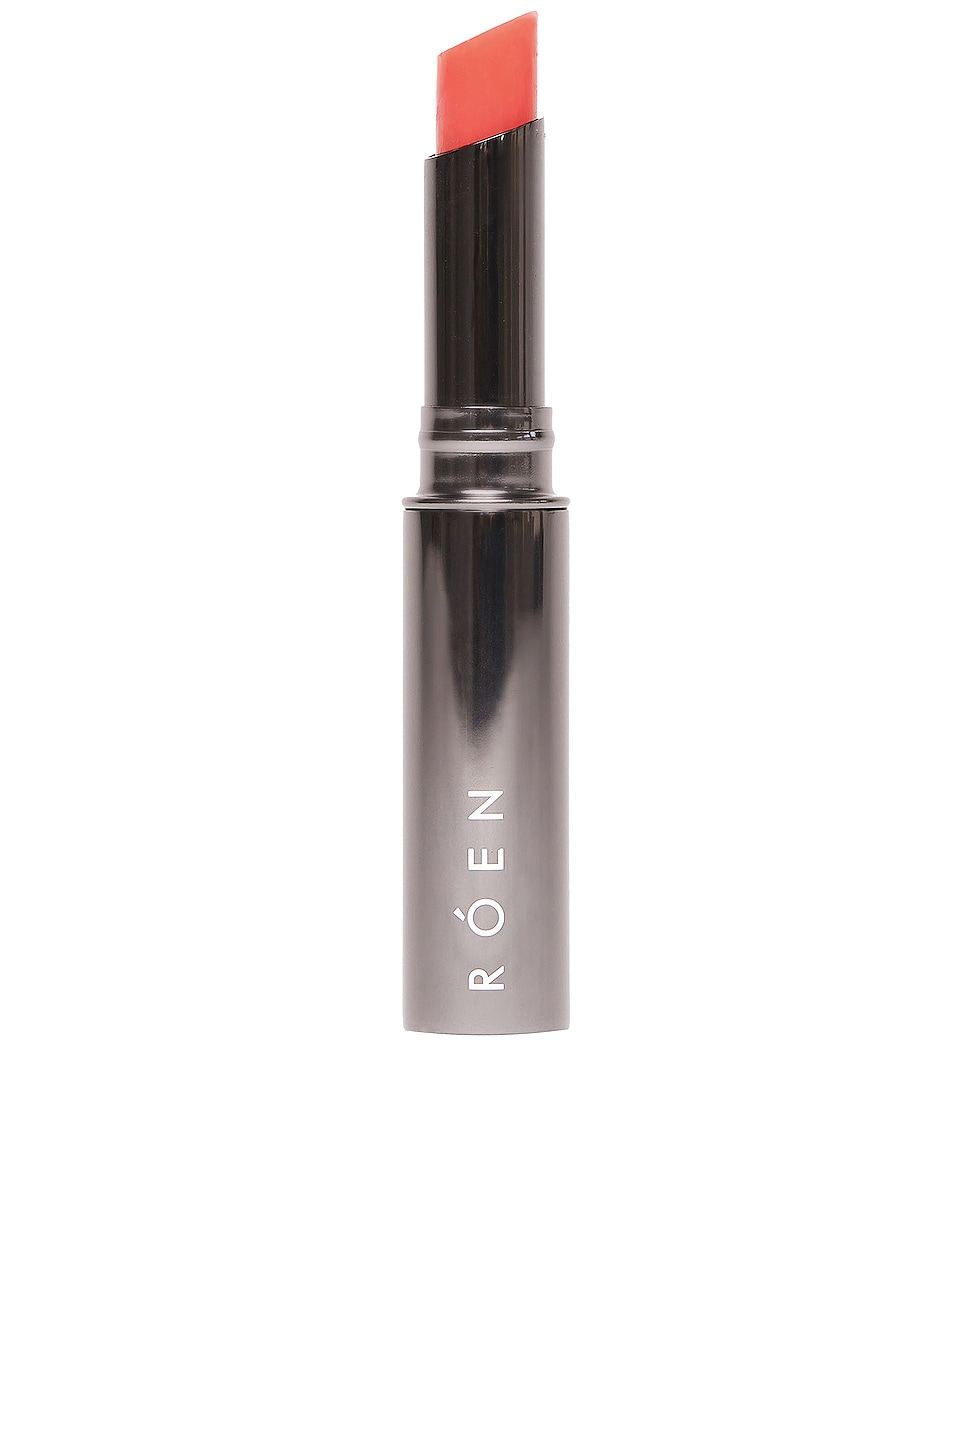 ROEN Elixir Tinted Lip Oil Balm in Beauty: Multi